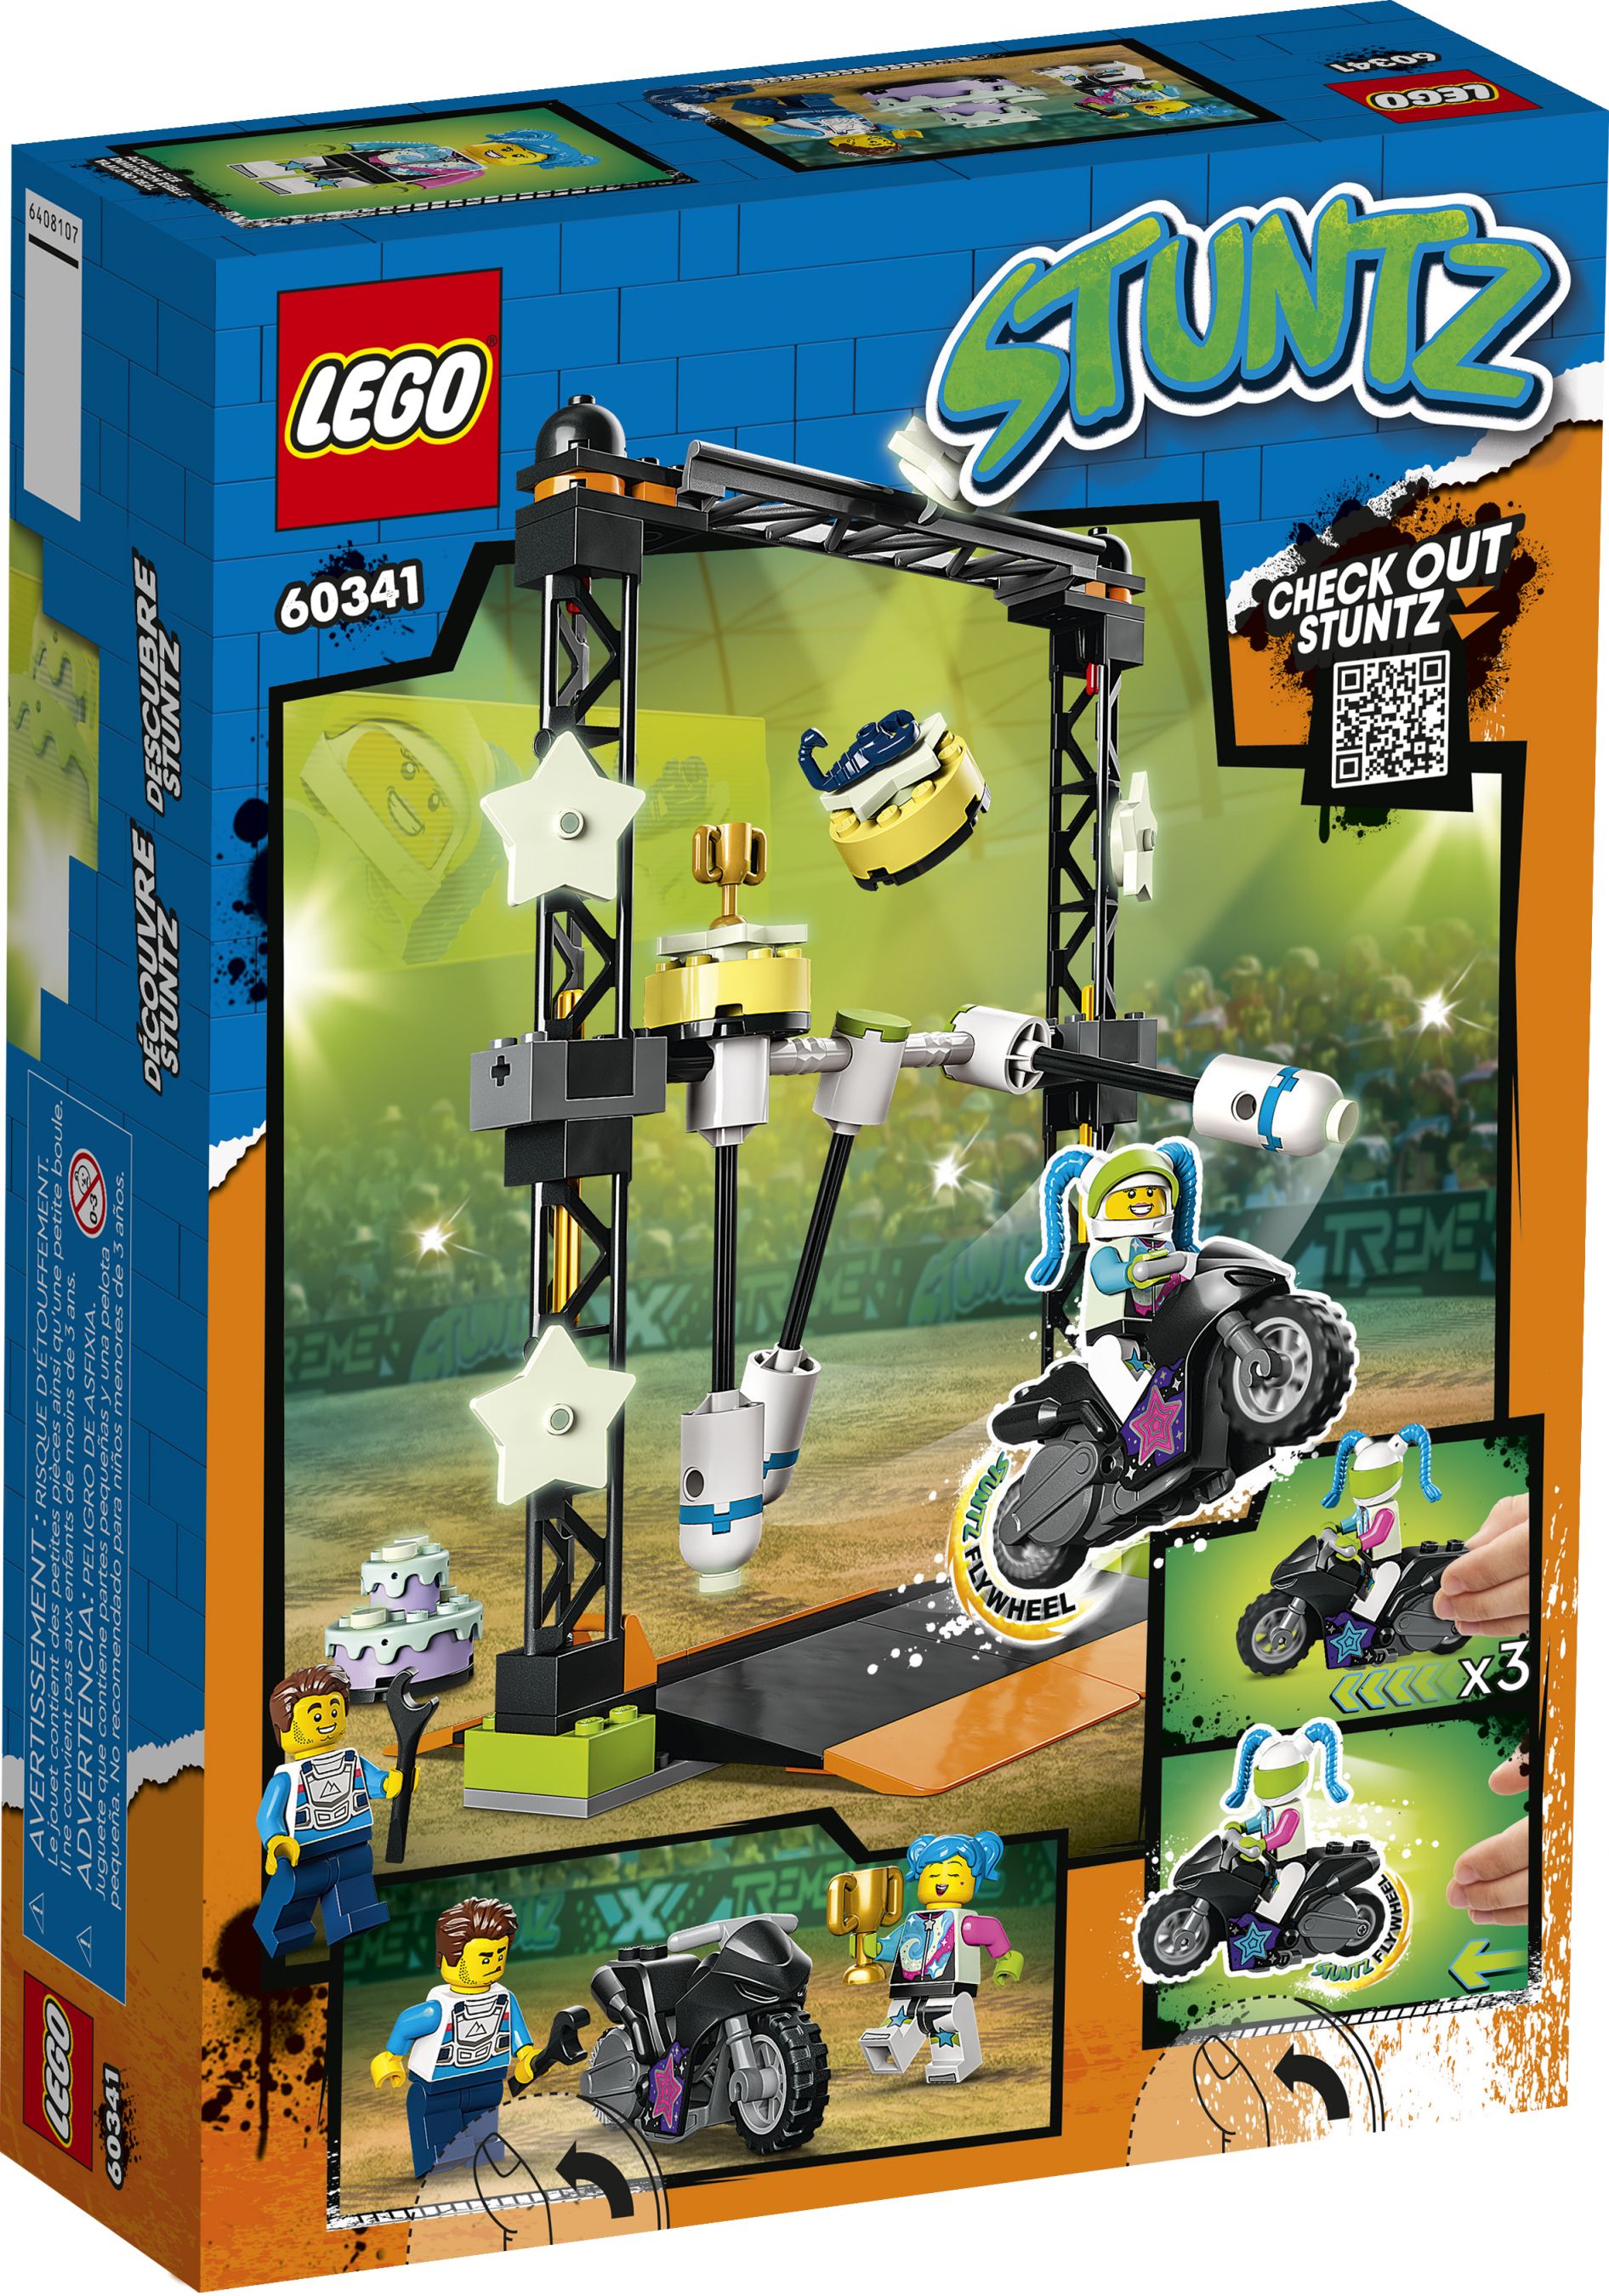 LEGO City 60341 Umstoß-Stuntchallenge LEGO_60341_Box5_v39.jpg